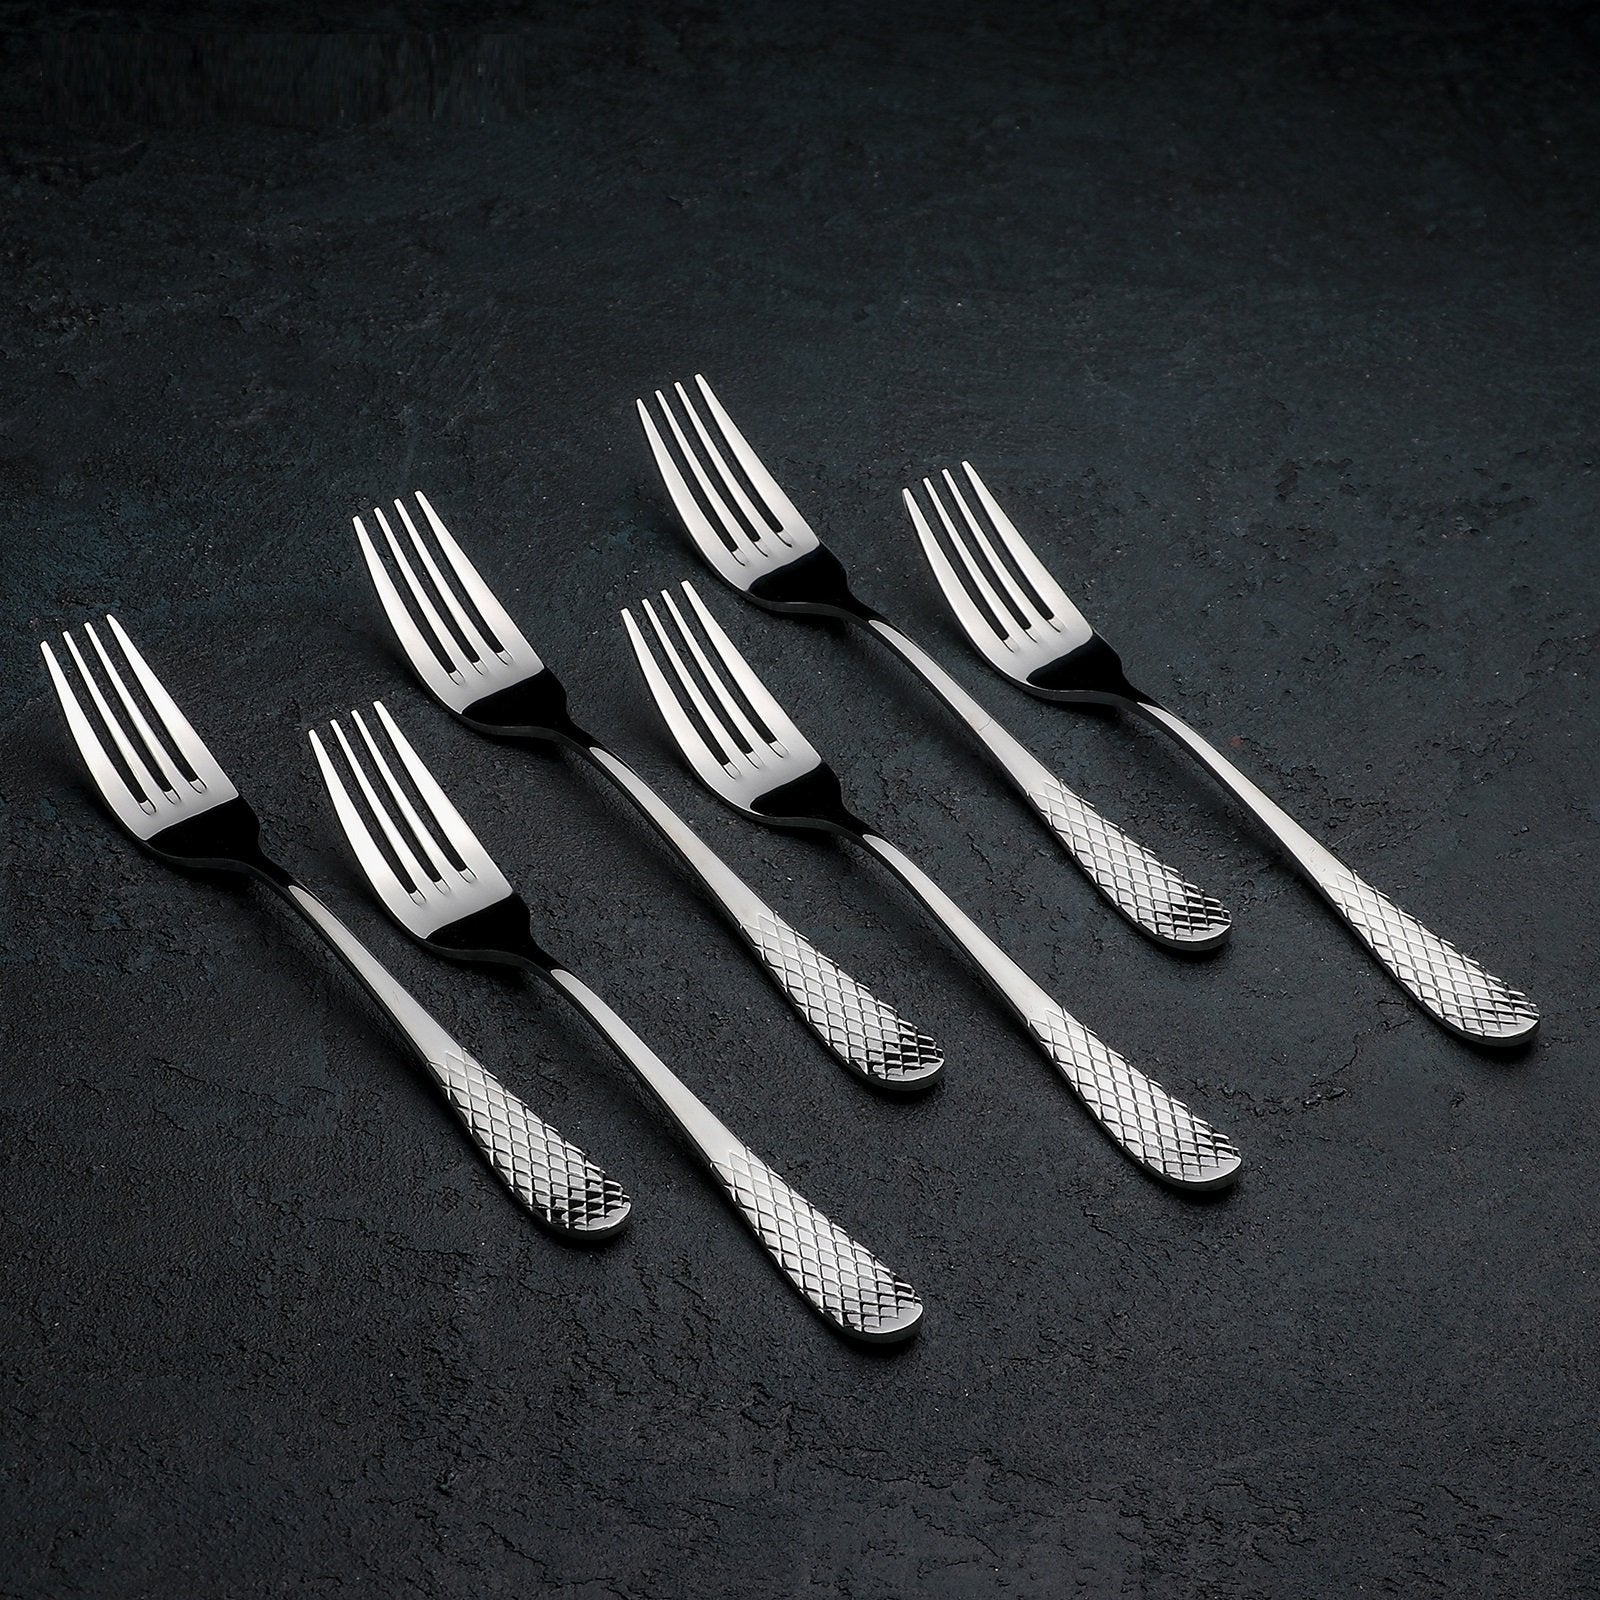 High Polish Stainless Steel Dinner Forks